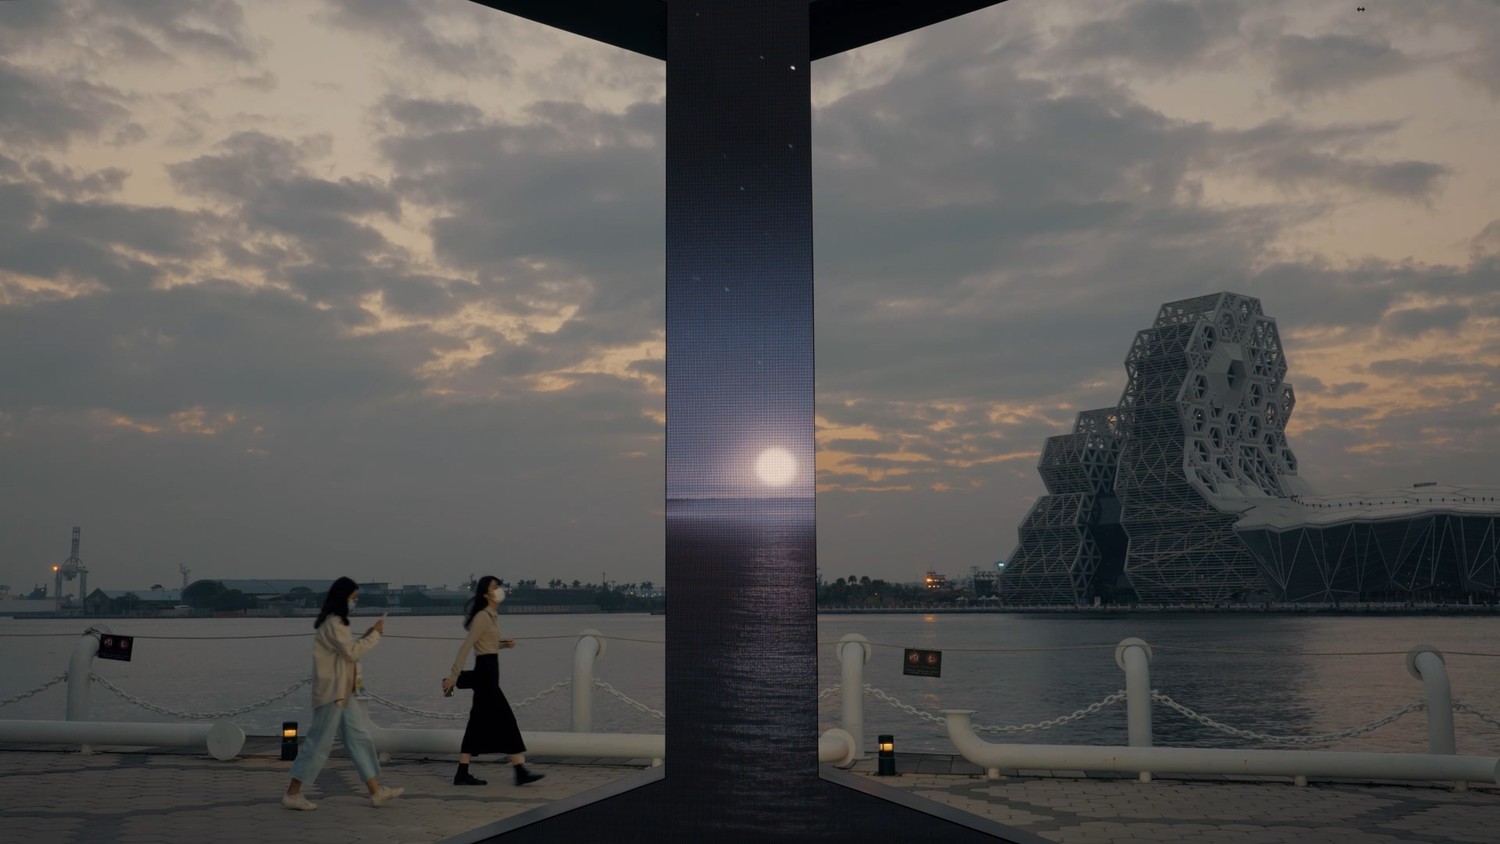 《I_光榮碼頭》在夕陽餘暉中呈現魔幻異想的景象。   圖:高雄市文化局提供